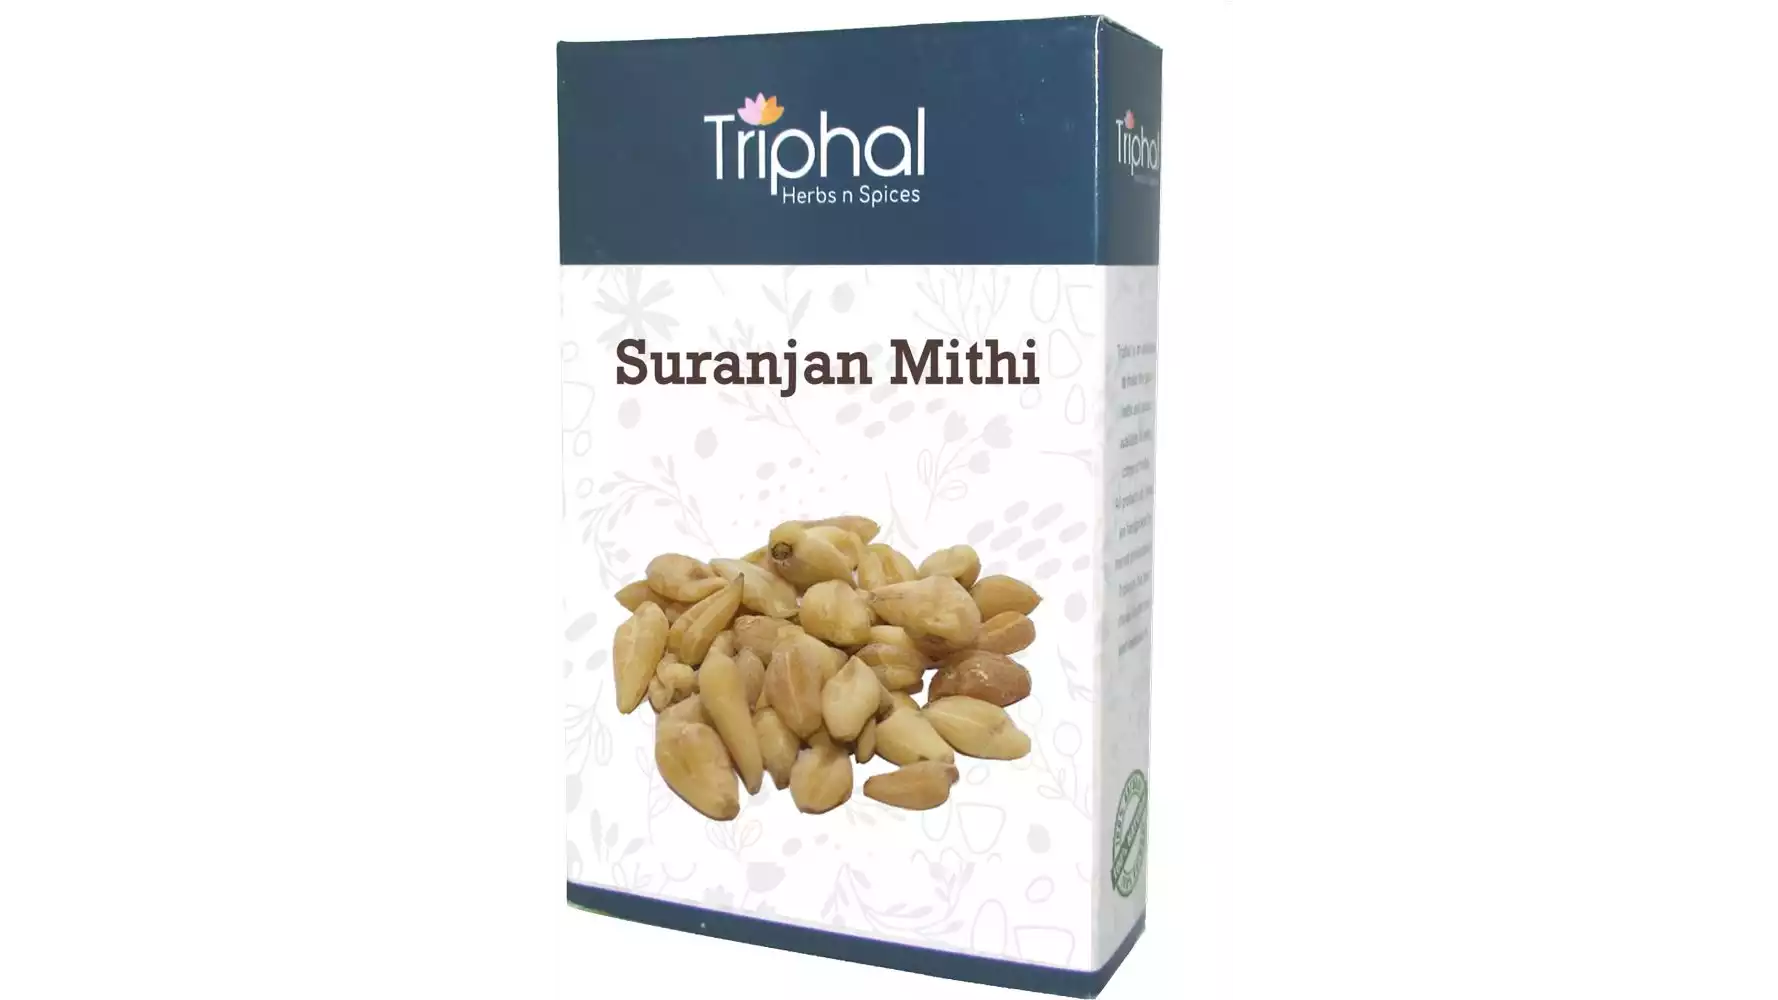 Triphal Raw Suranjan Mithi (200g)